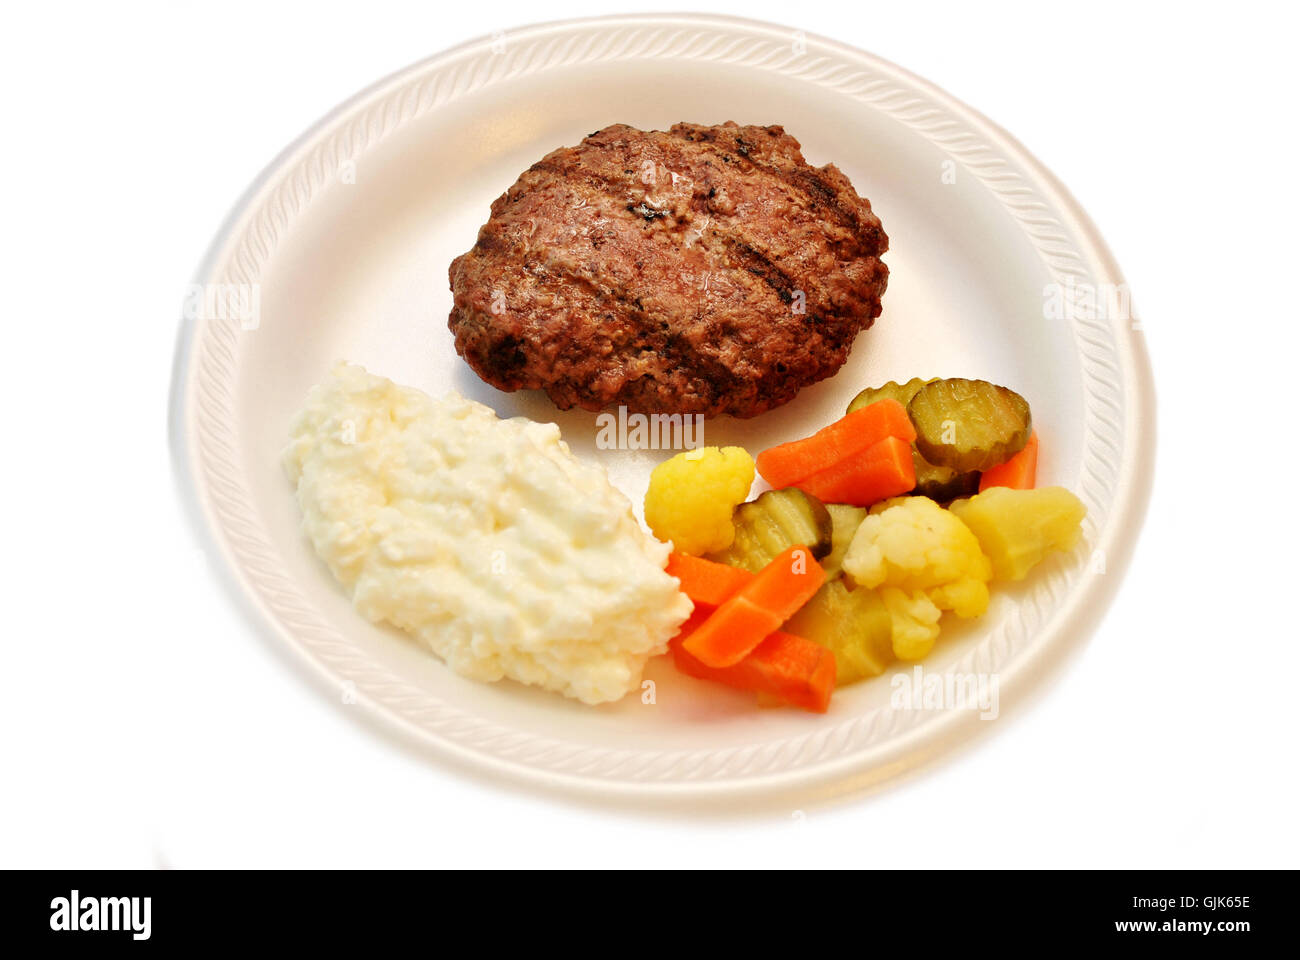 Gesunde Mahlzeit von magerem Fleisch, eingelegtem Gemüse und Quark Stockfoto